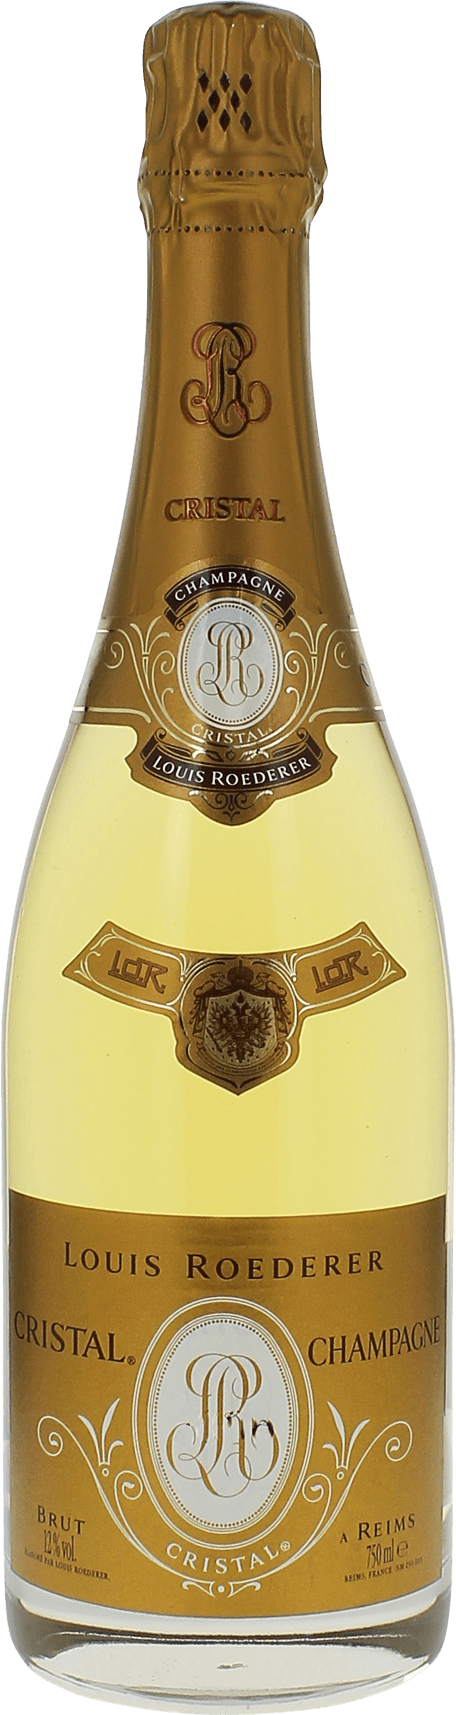 Cristal roederer 1996  Roederer, Champagne